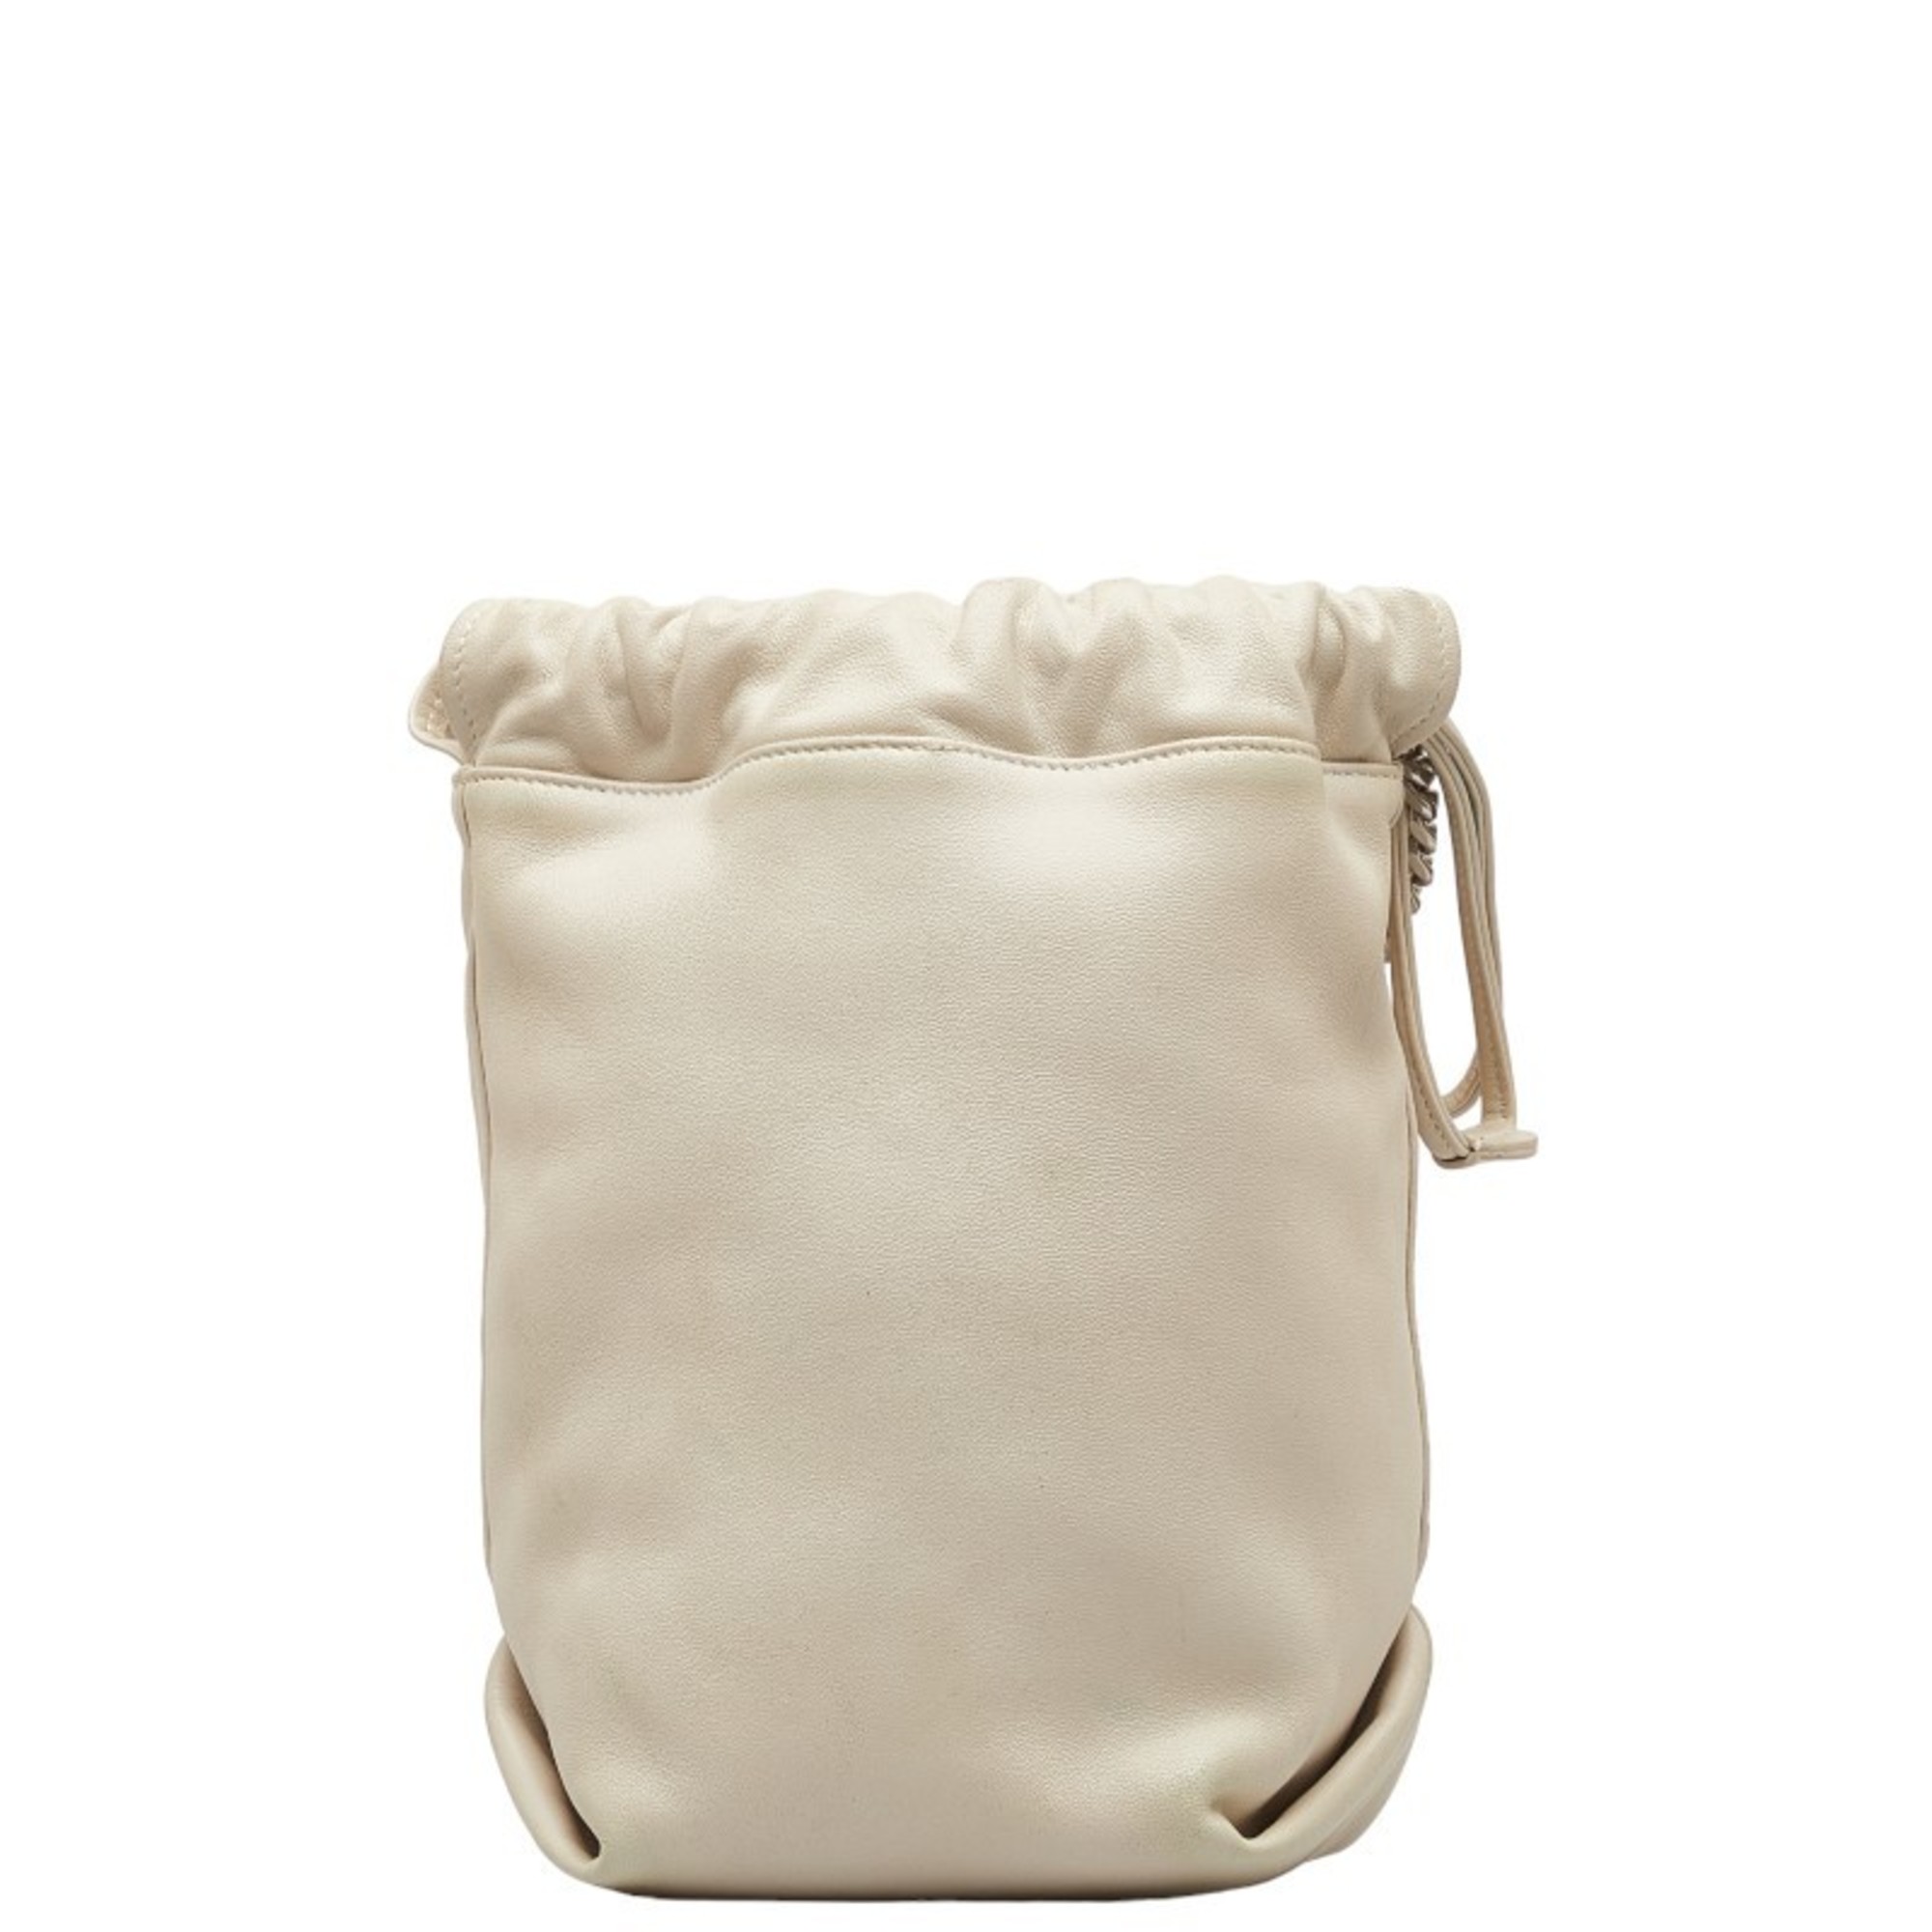 Saint Laurent Teddy Small Chain Shoulder Bag 583328 Ivory White Leather Women's SAINT LAURENT